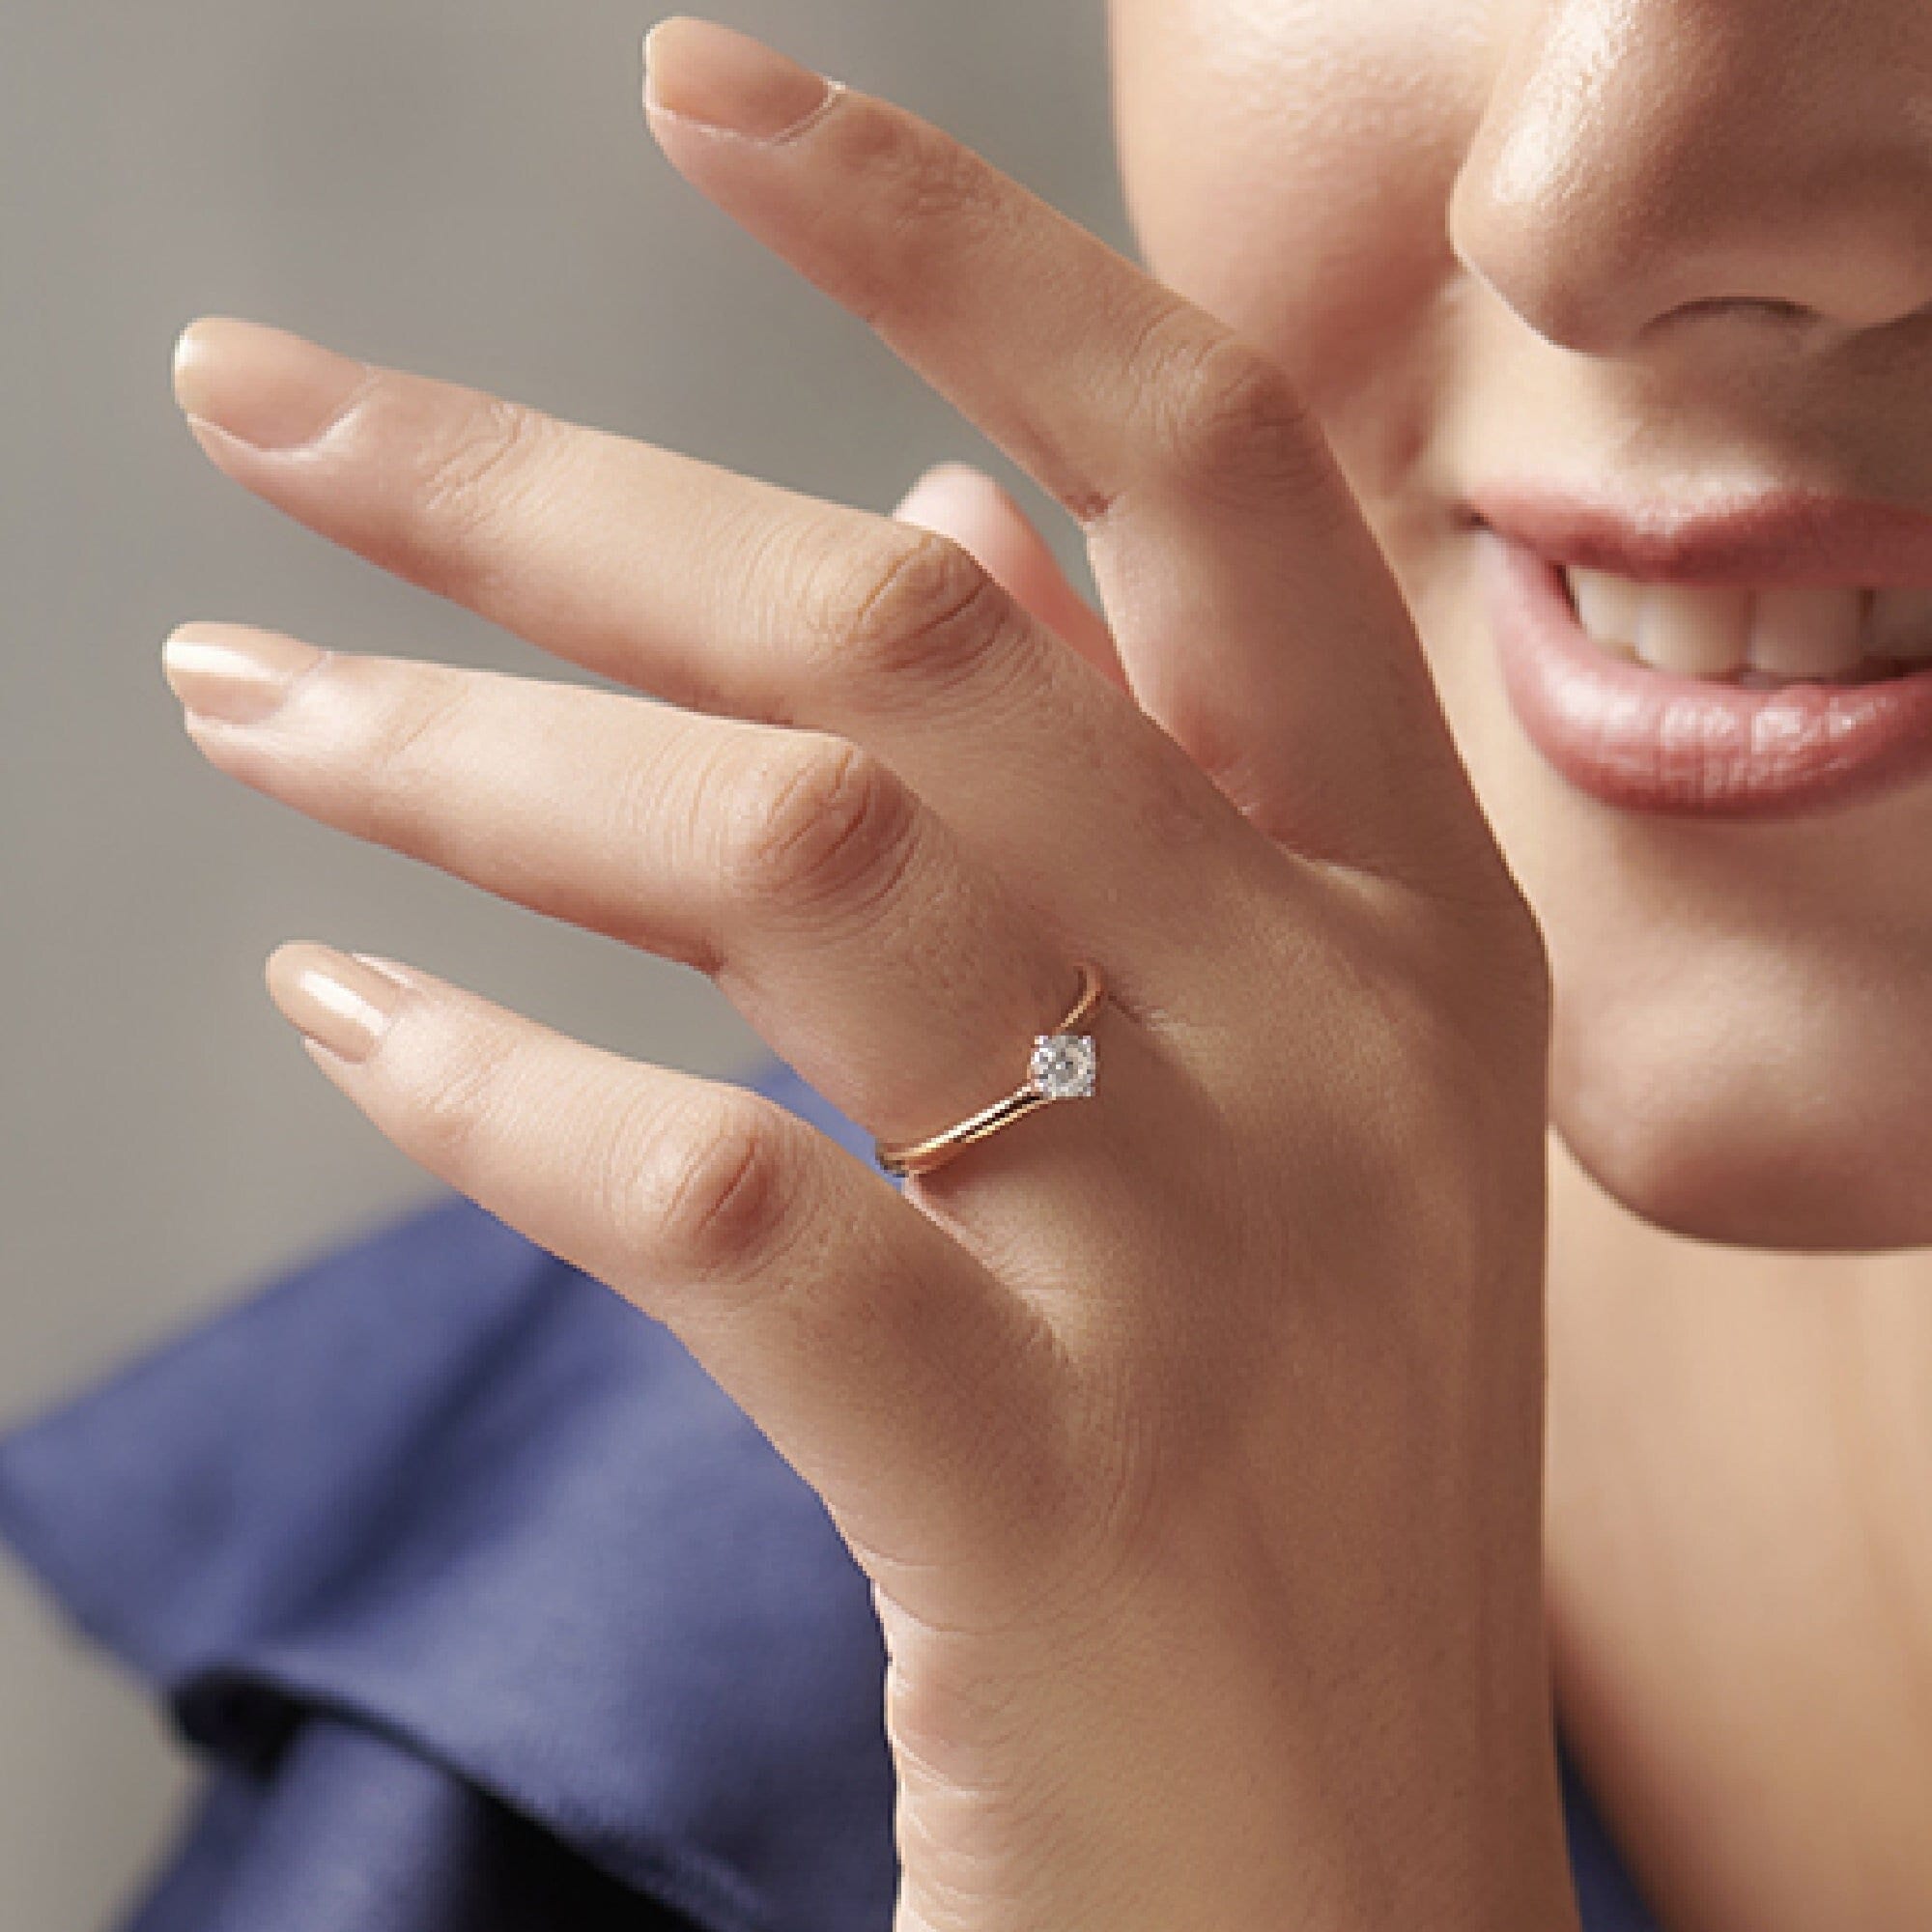 Rosa Del Amor' Natural Rose Gold Engagement Ring